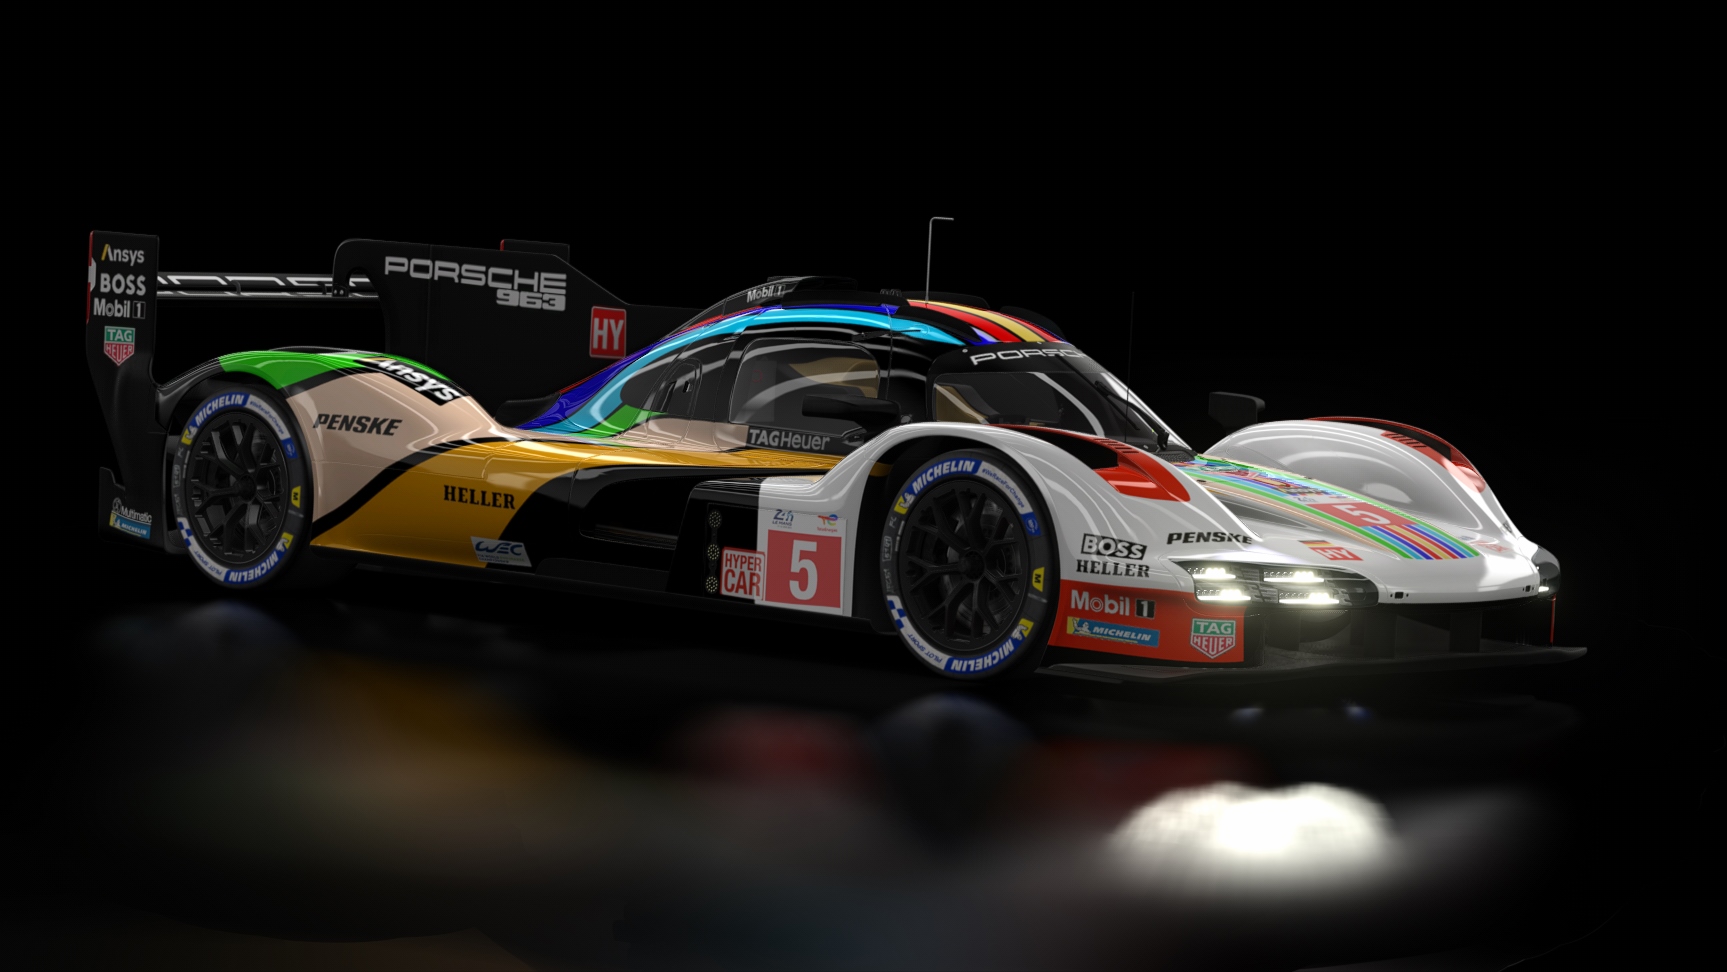 LMH - Porsche 963 2023, skin 2023 Le Mans Porsche #5